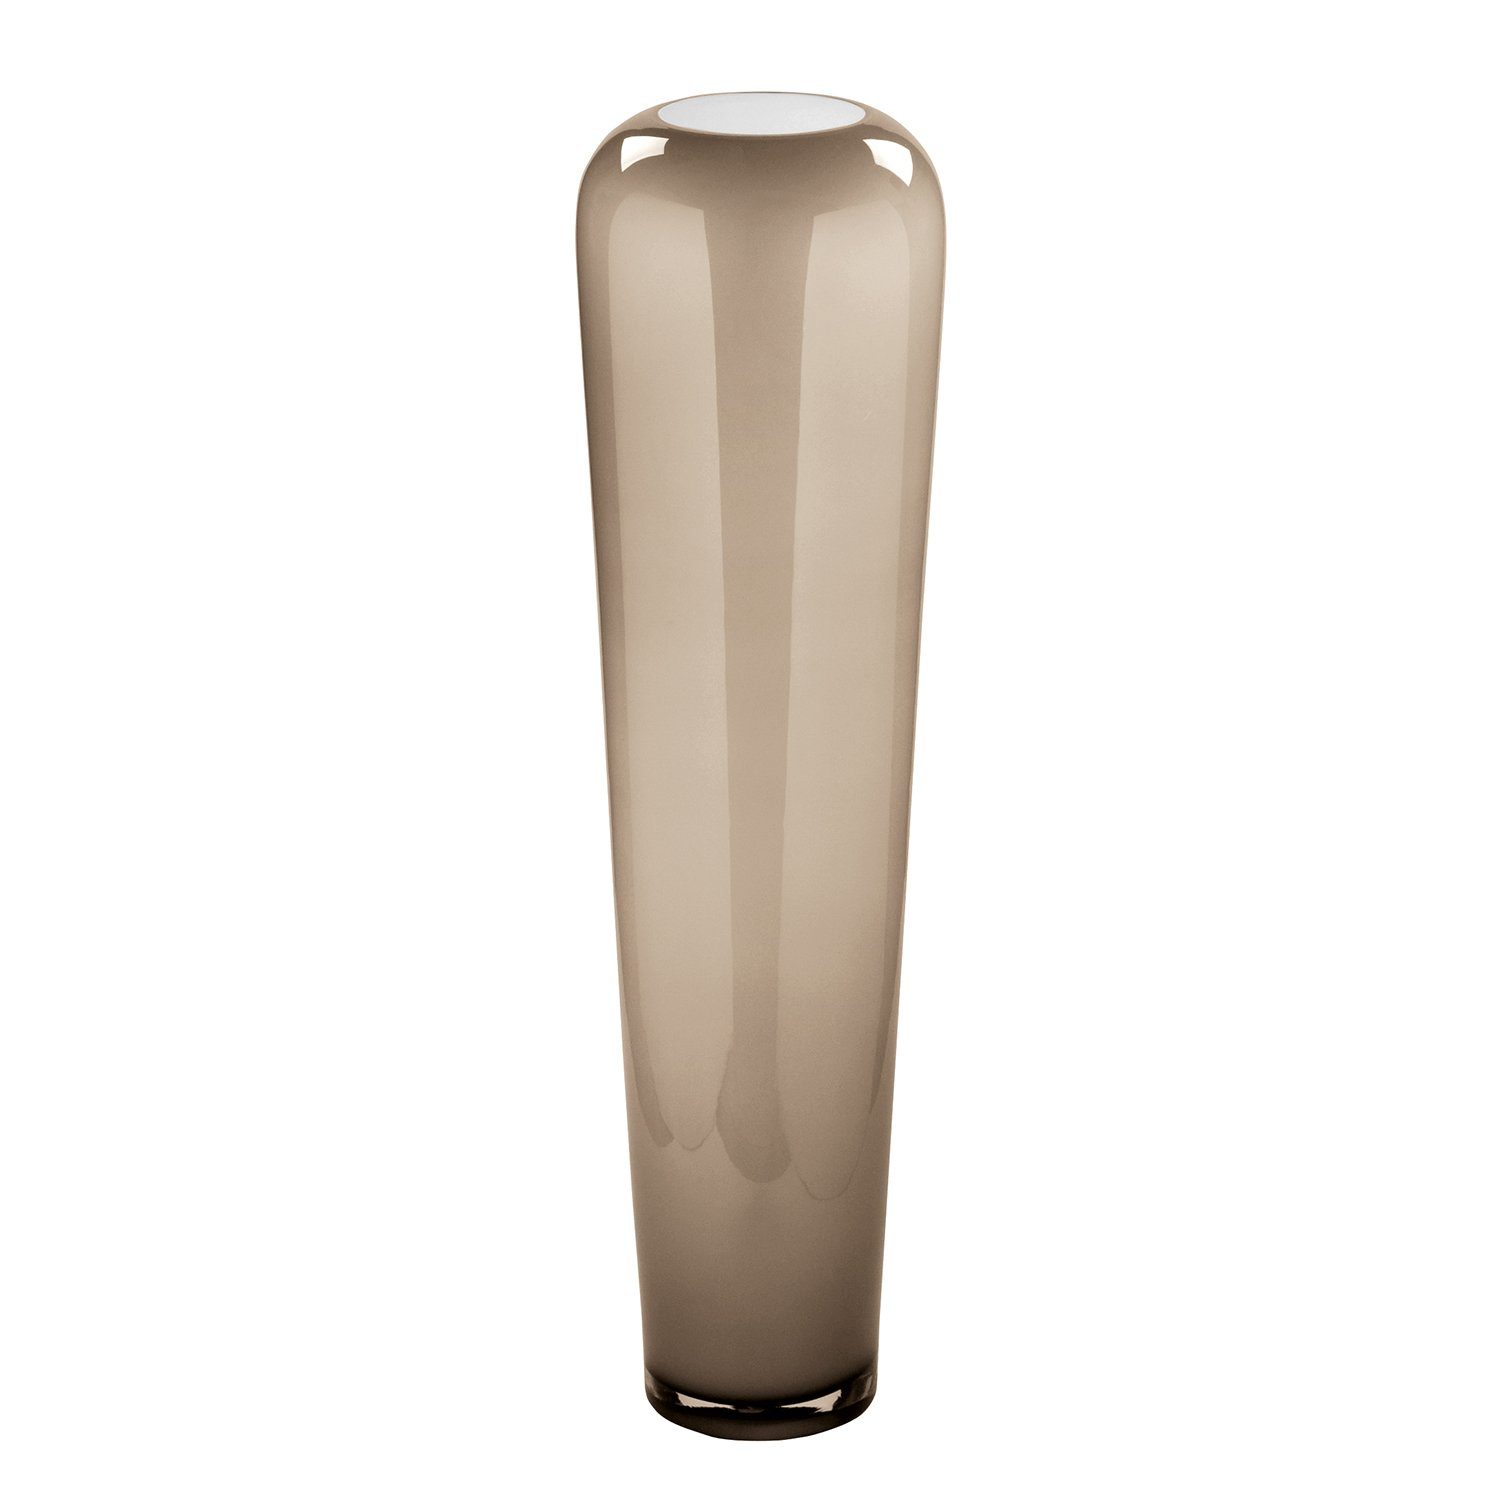 Fink Vase - Durchmesser opal durchgefärbtem - ca.13cm, - Dekovase Öffnung TUTZI - Aus Glas durchgefärbtes Opalglas H.90cm, greige Mundgeblasenes Glas